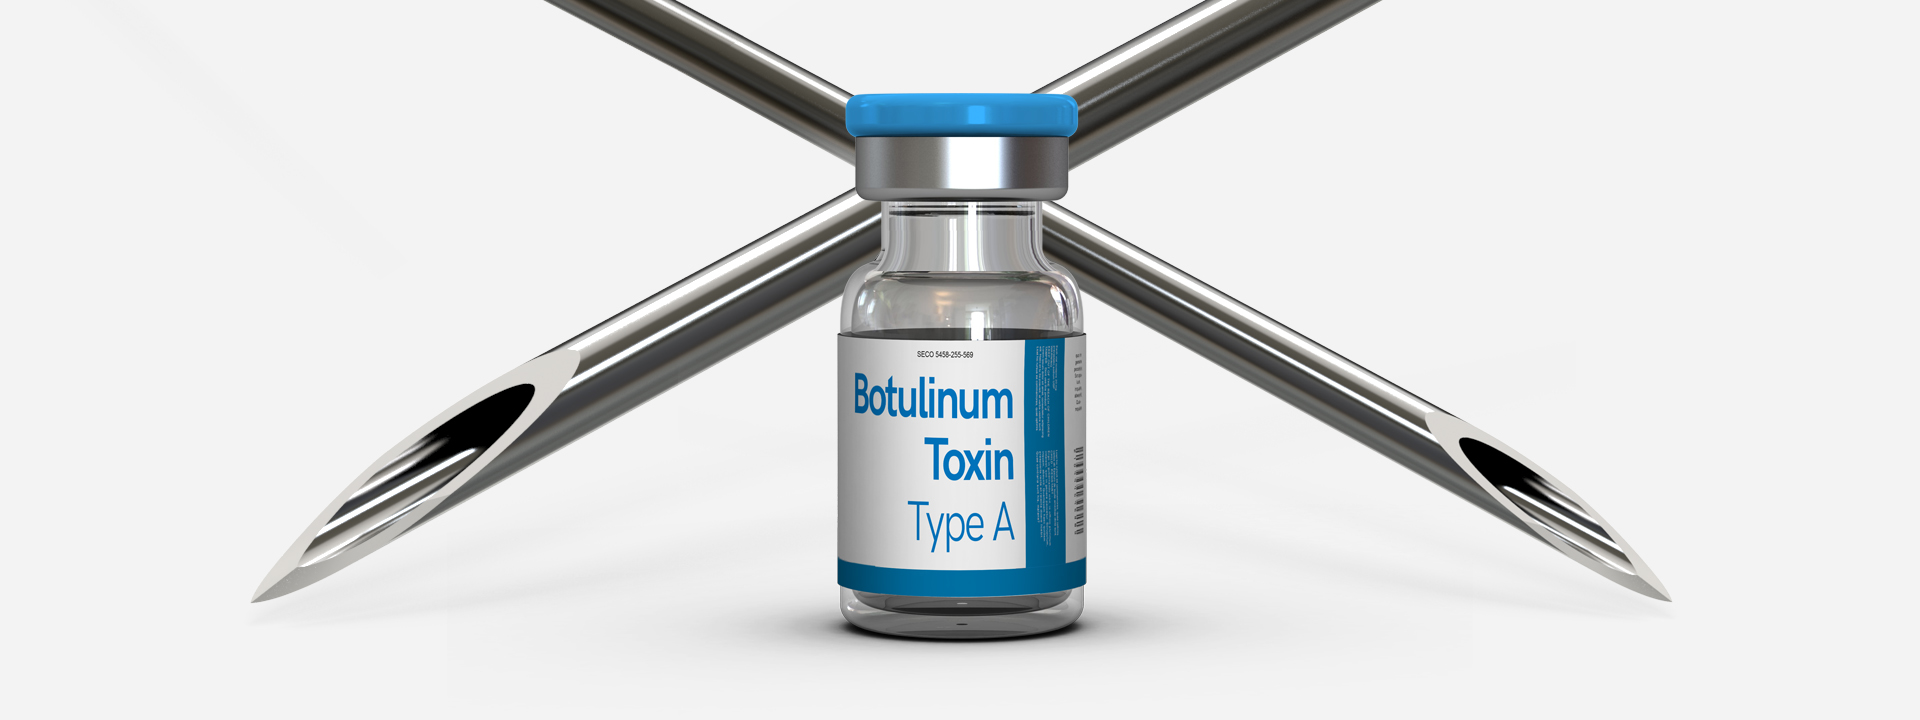 Botulinum toxin teszt